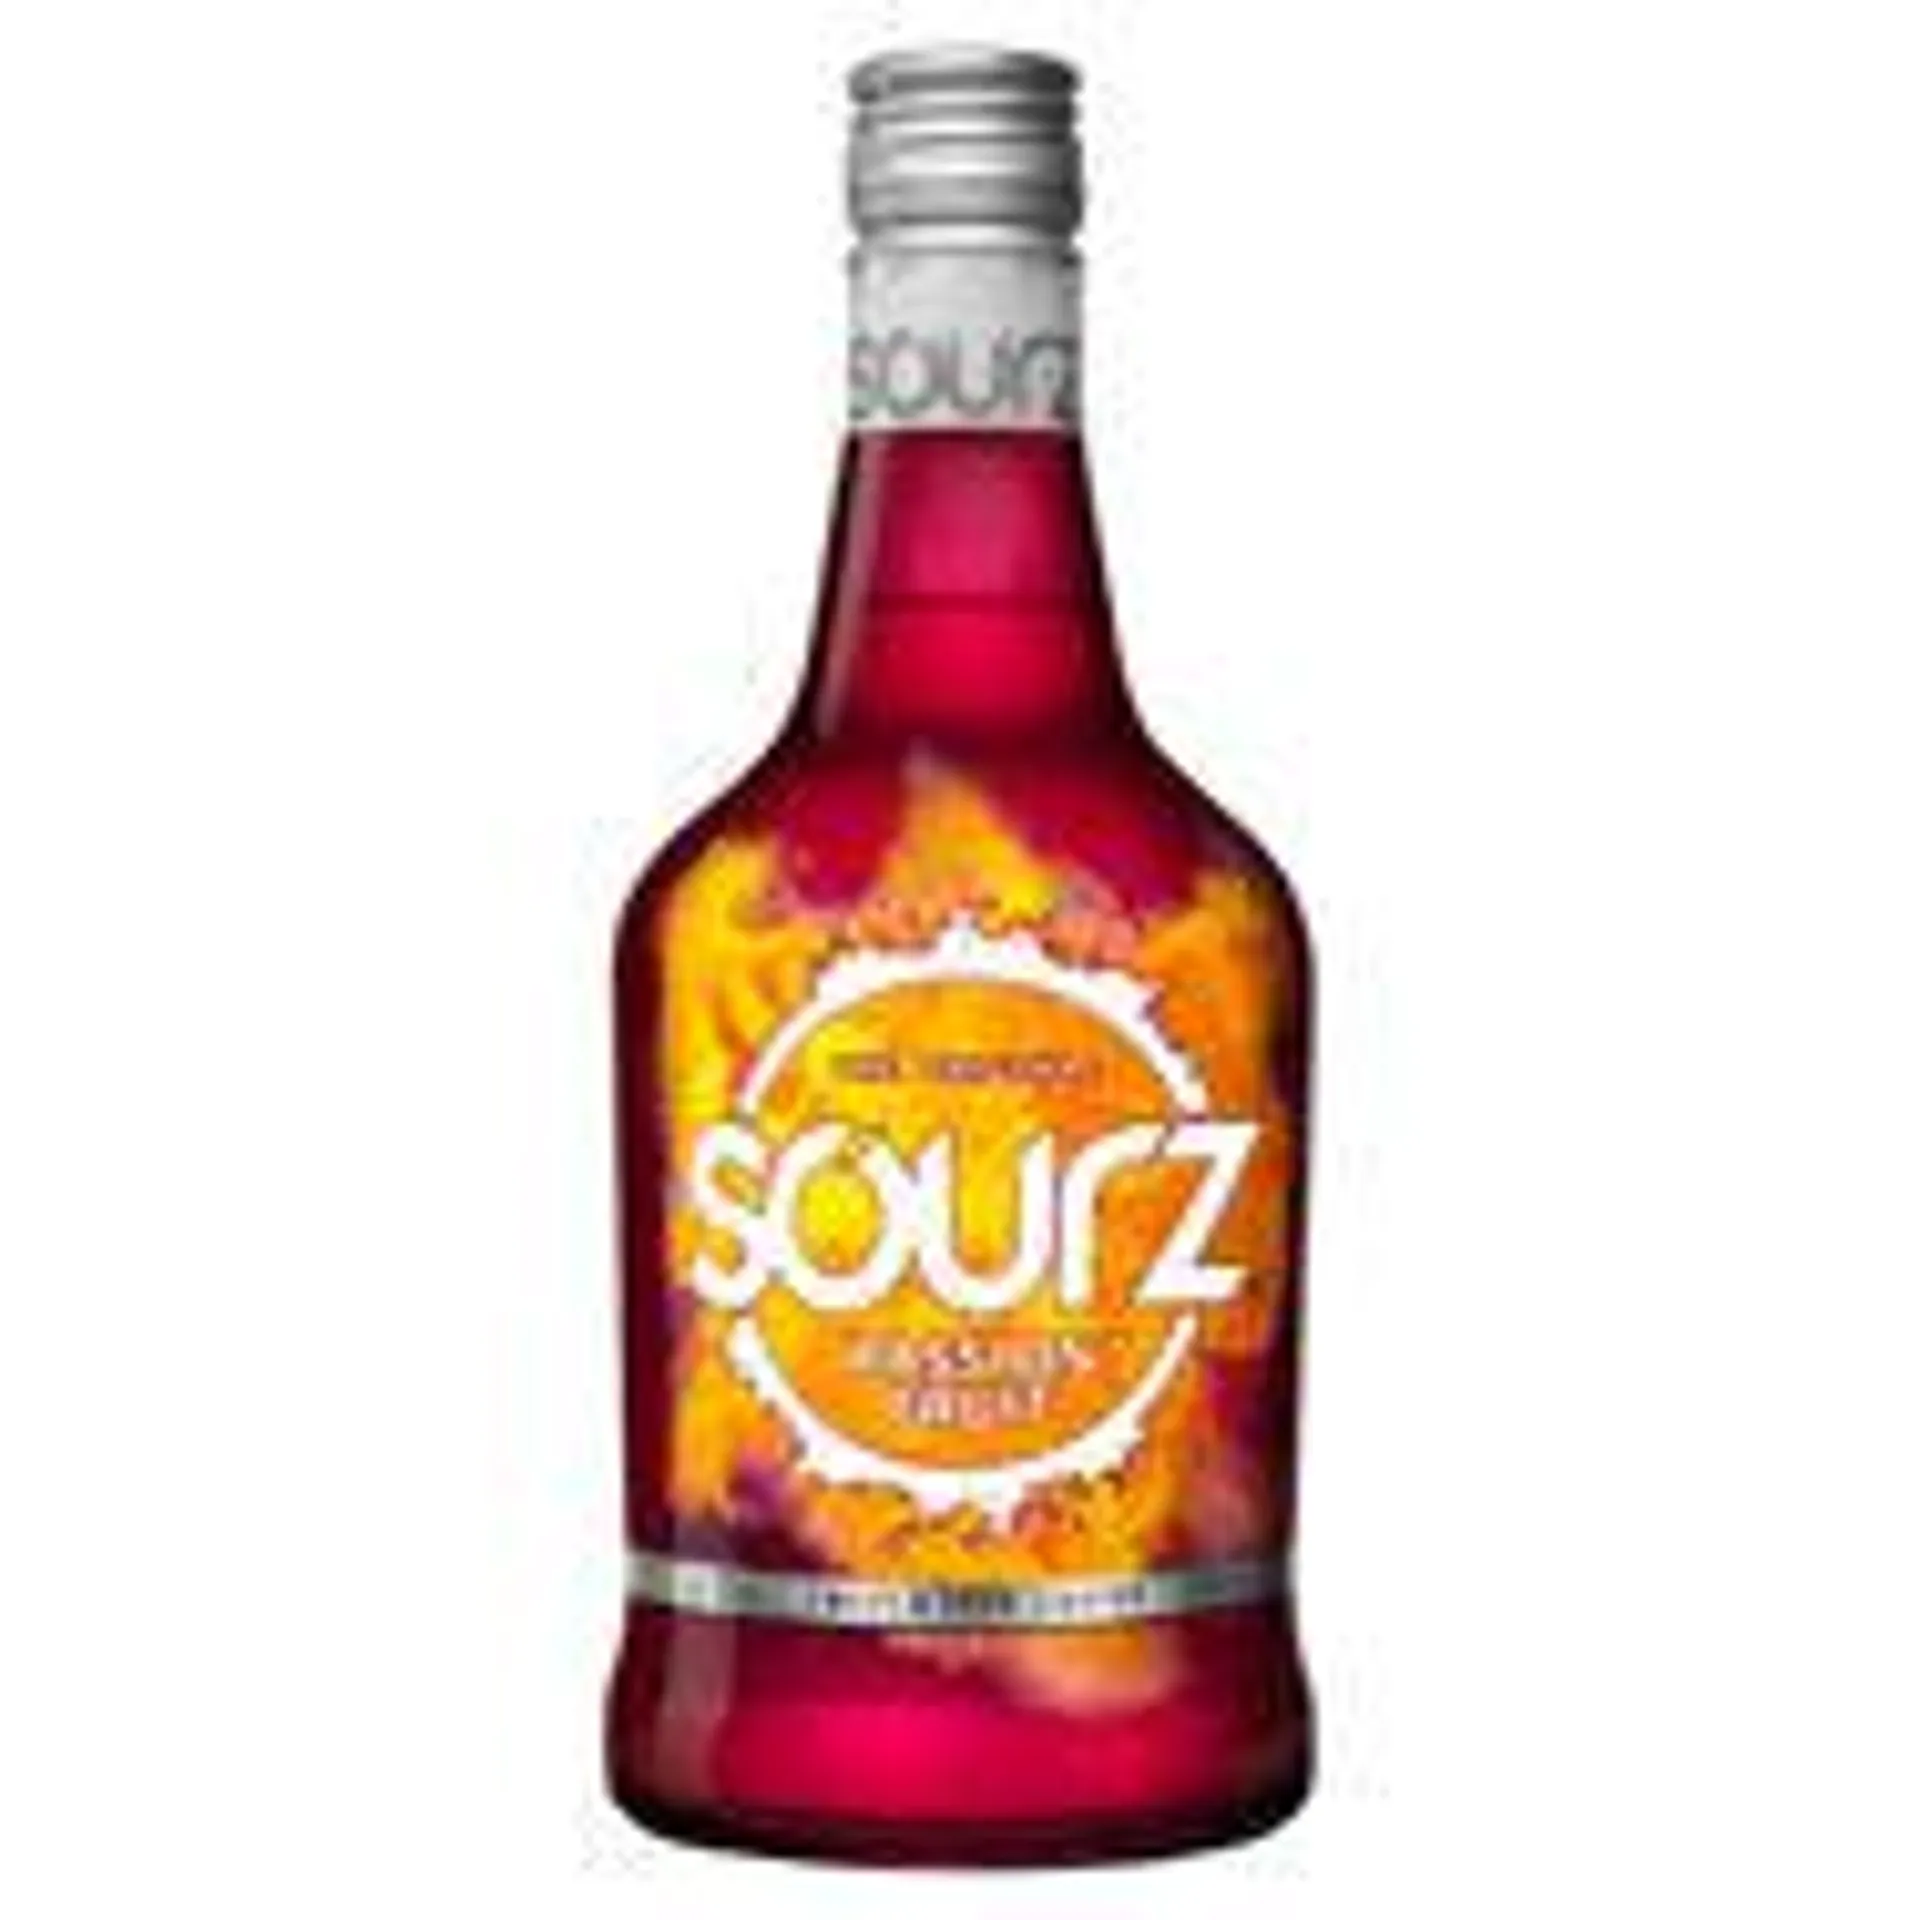 Sourz Passion Fruit Liqueur